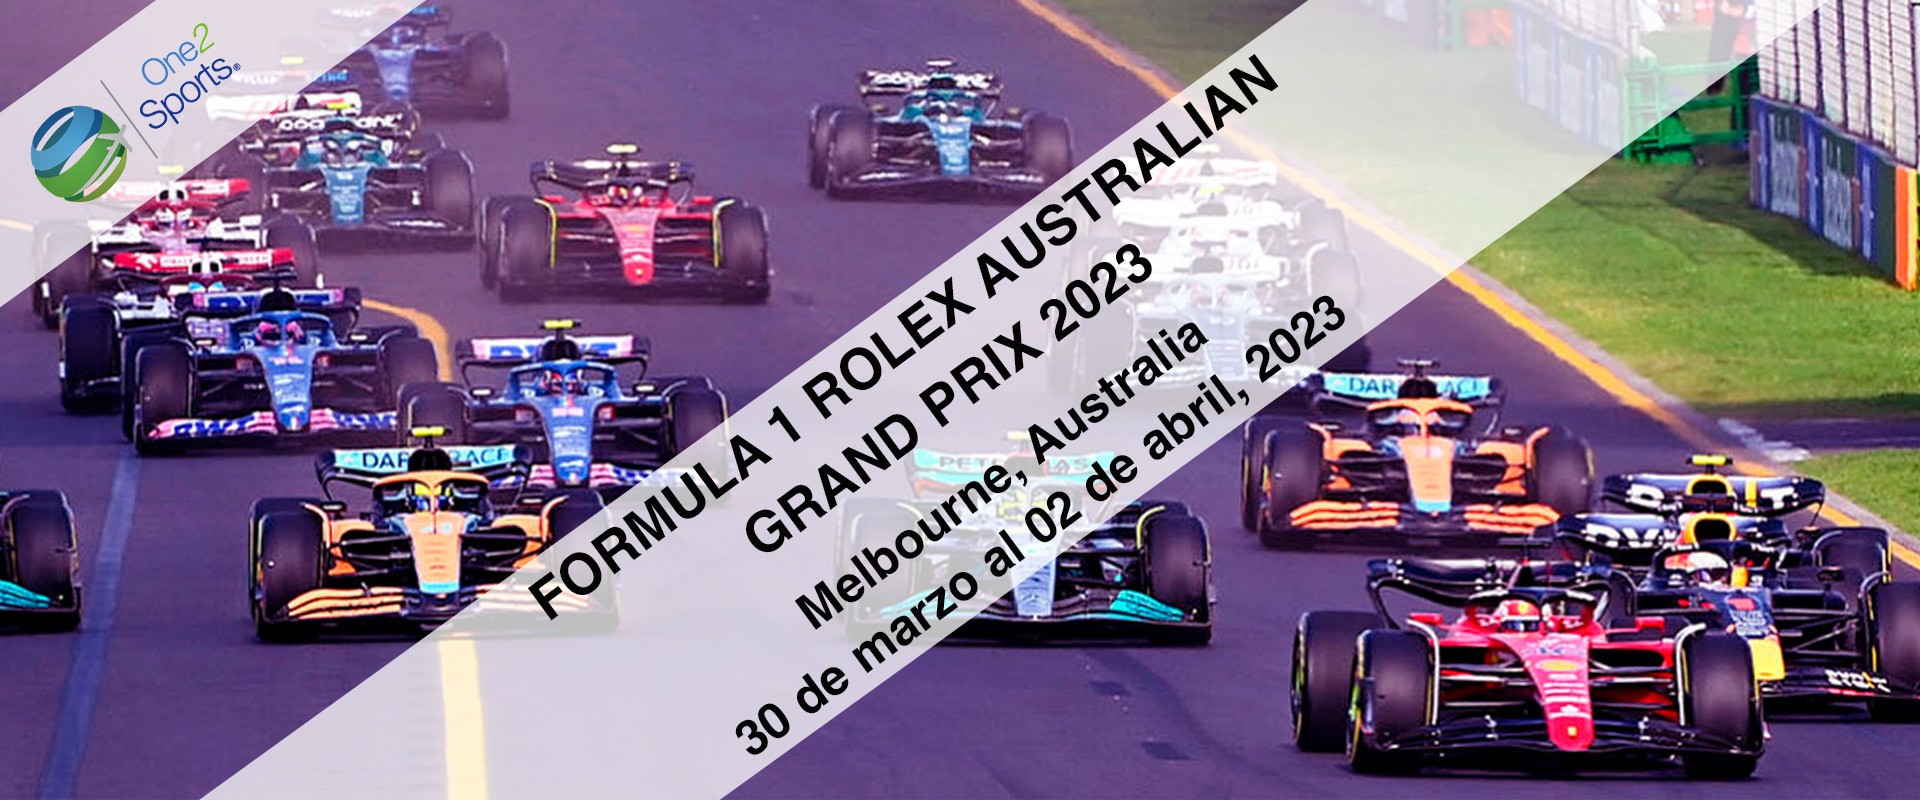 F1 Gran Premio Australia 